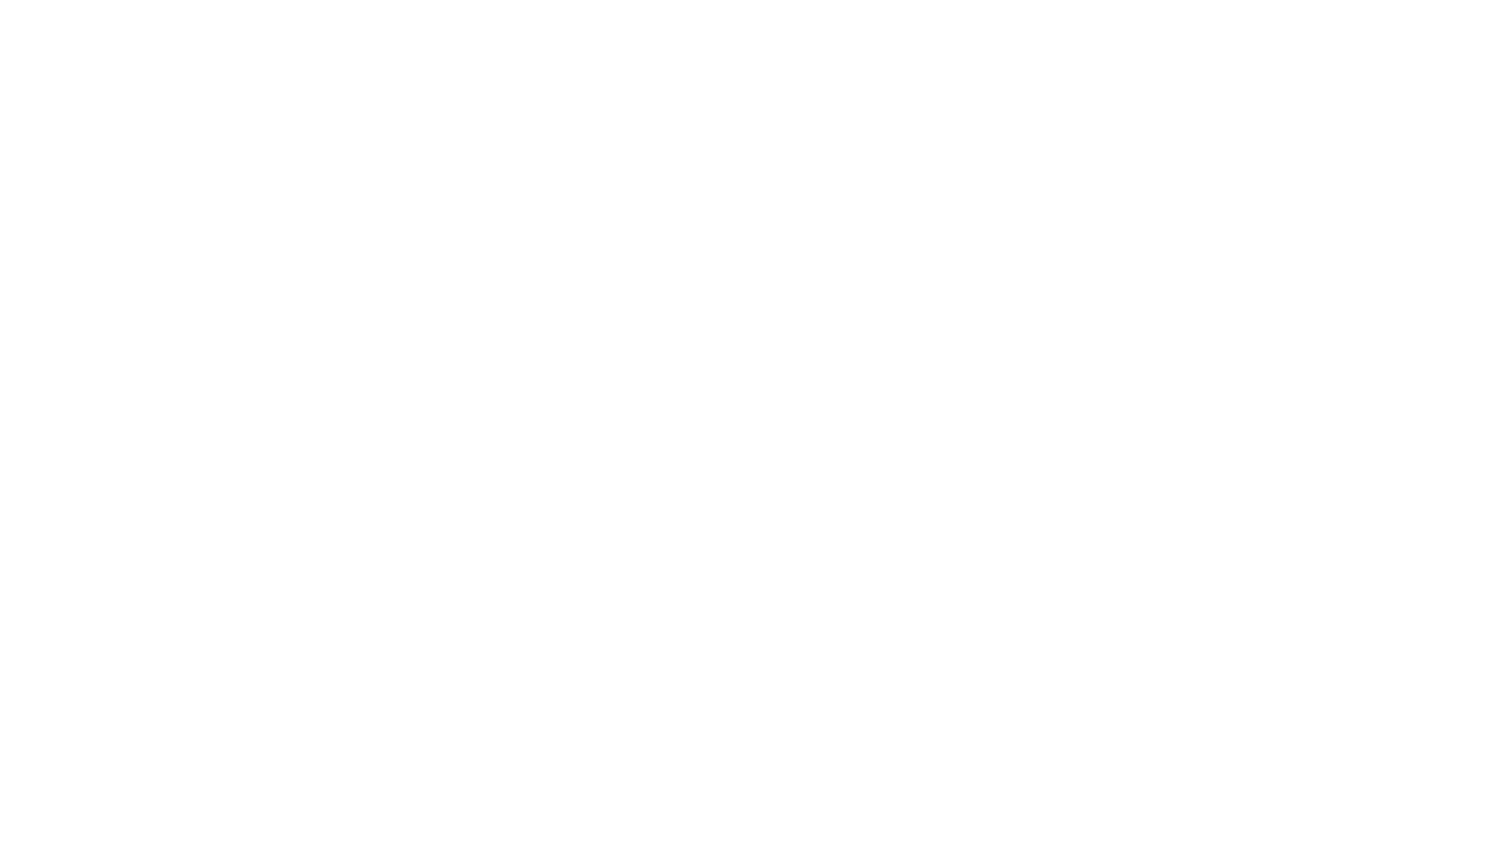 BLACK COLLAR